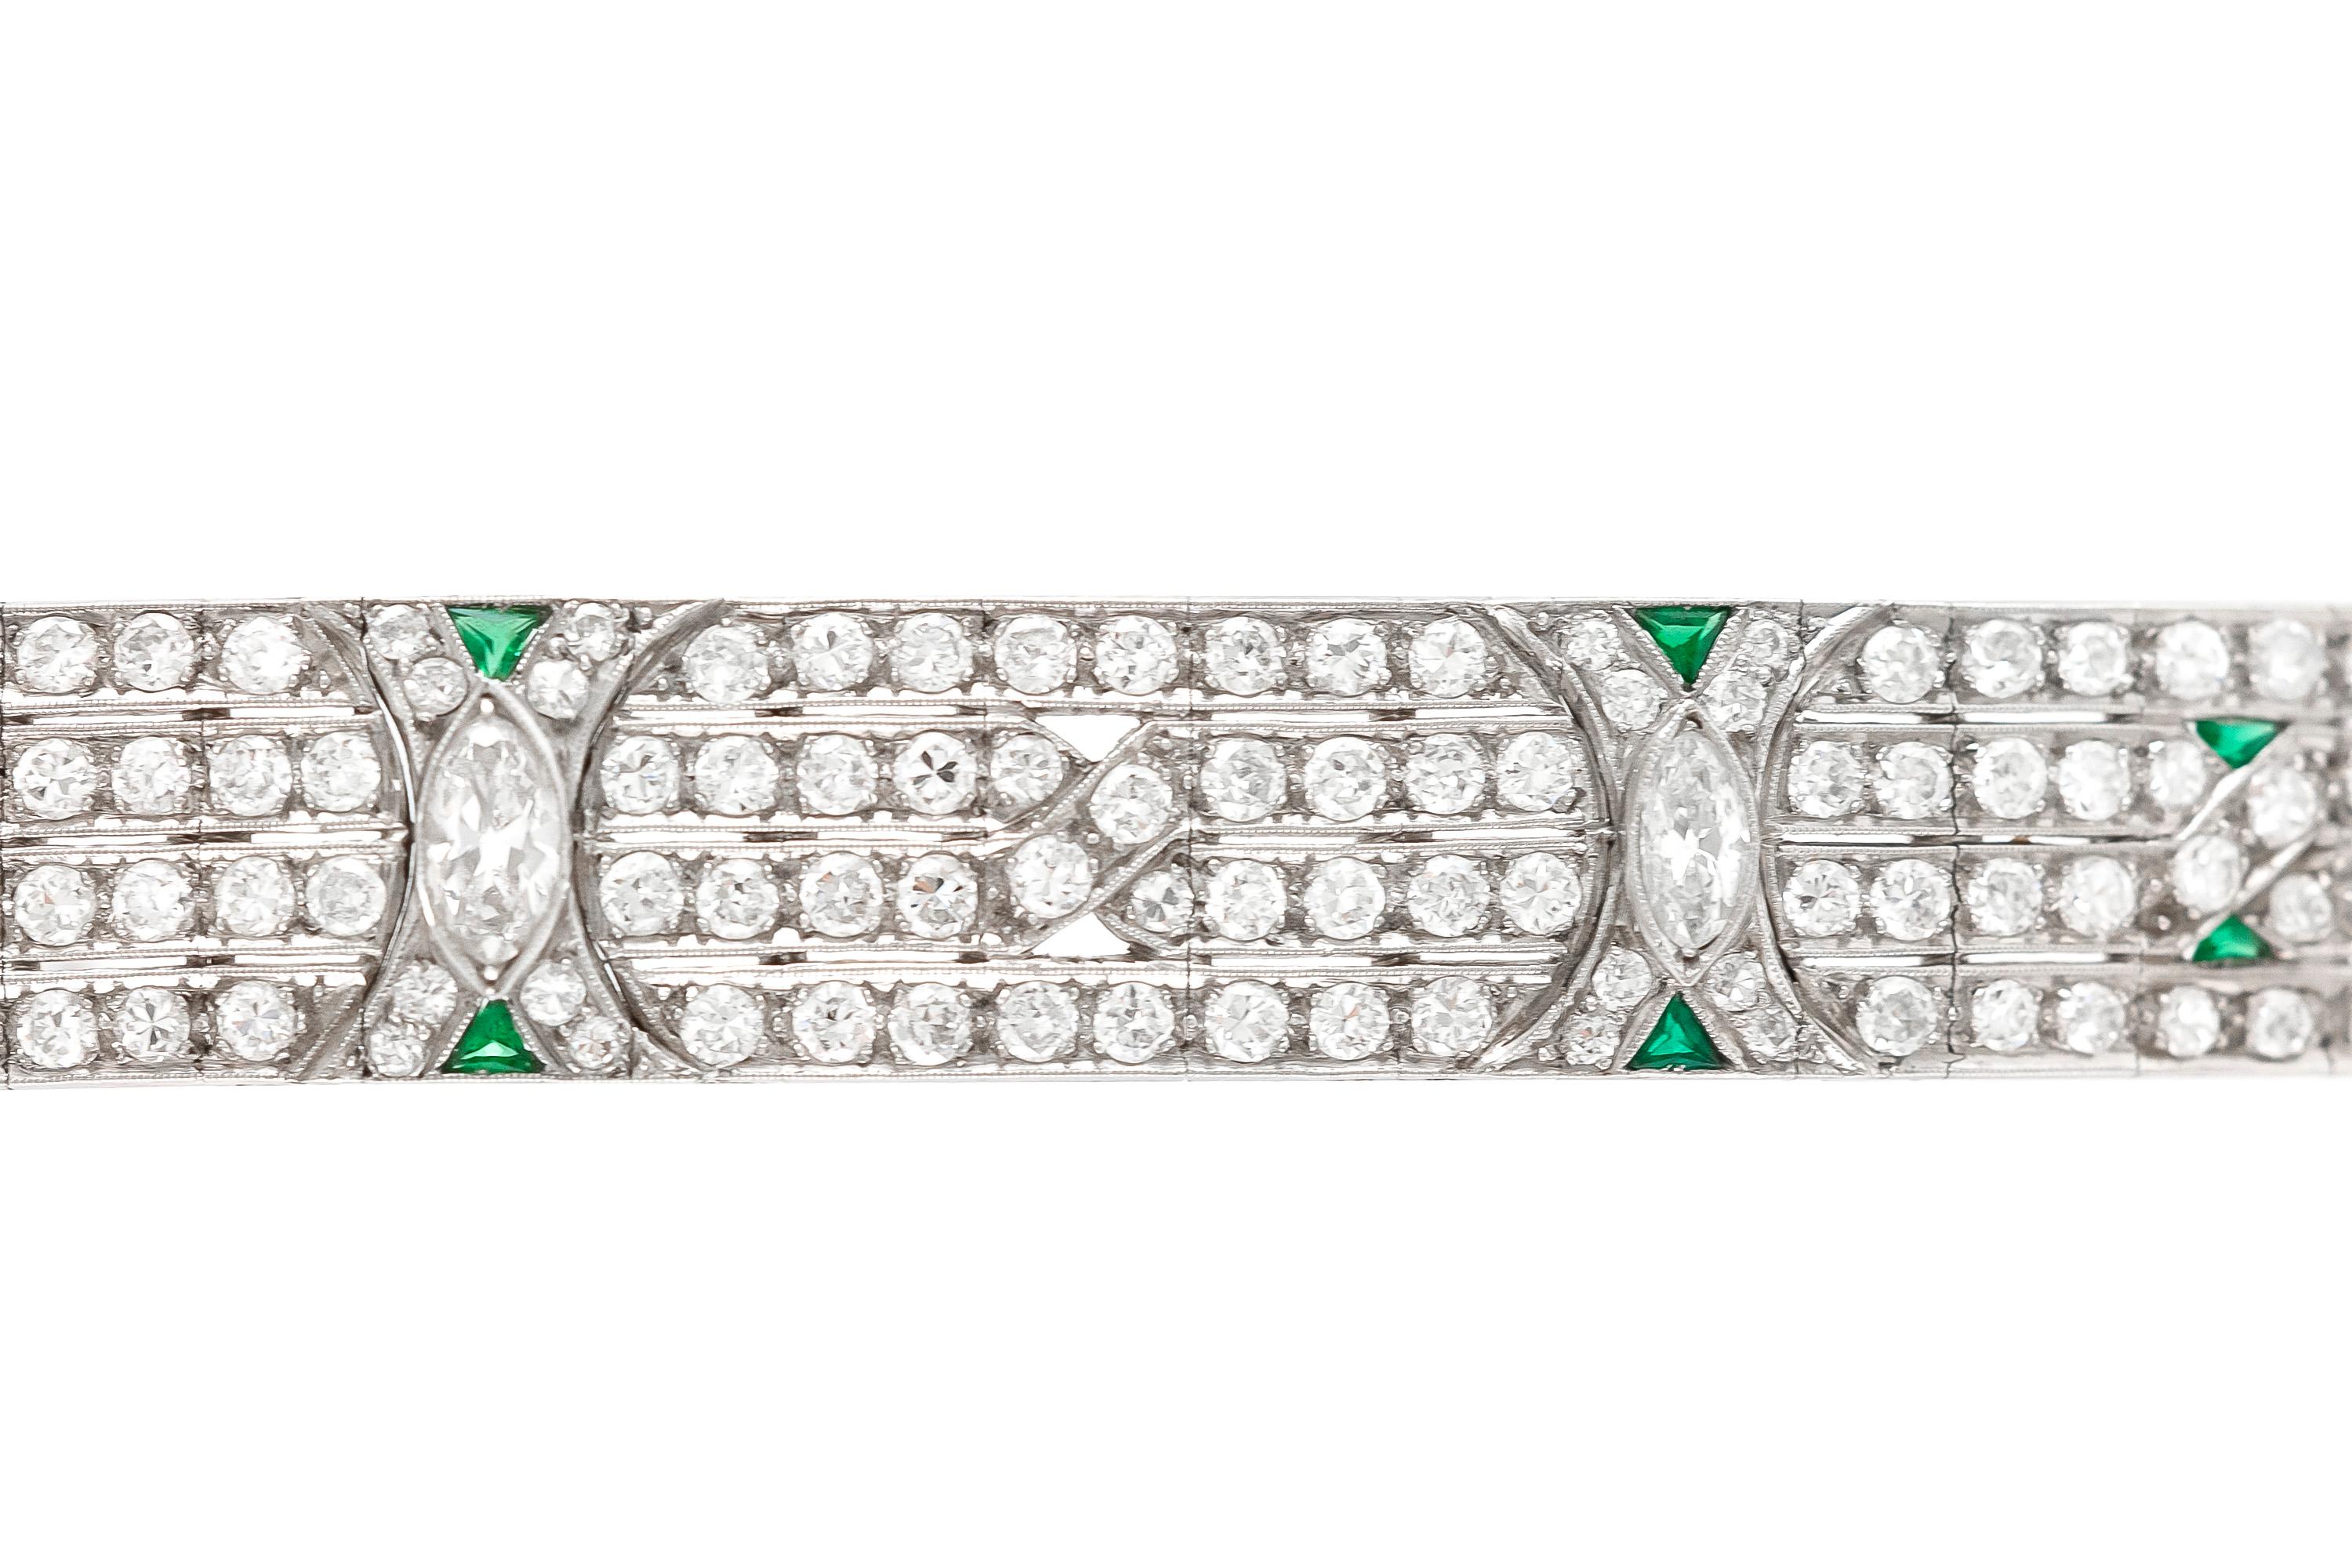 Le bracelet est finement réalisé en platine avec des émeraudes et des diamants pesant approximativement 18,00 carats au total.
Circa 1920.
Facile à reconstituer si nécessaire.